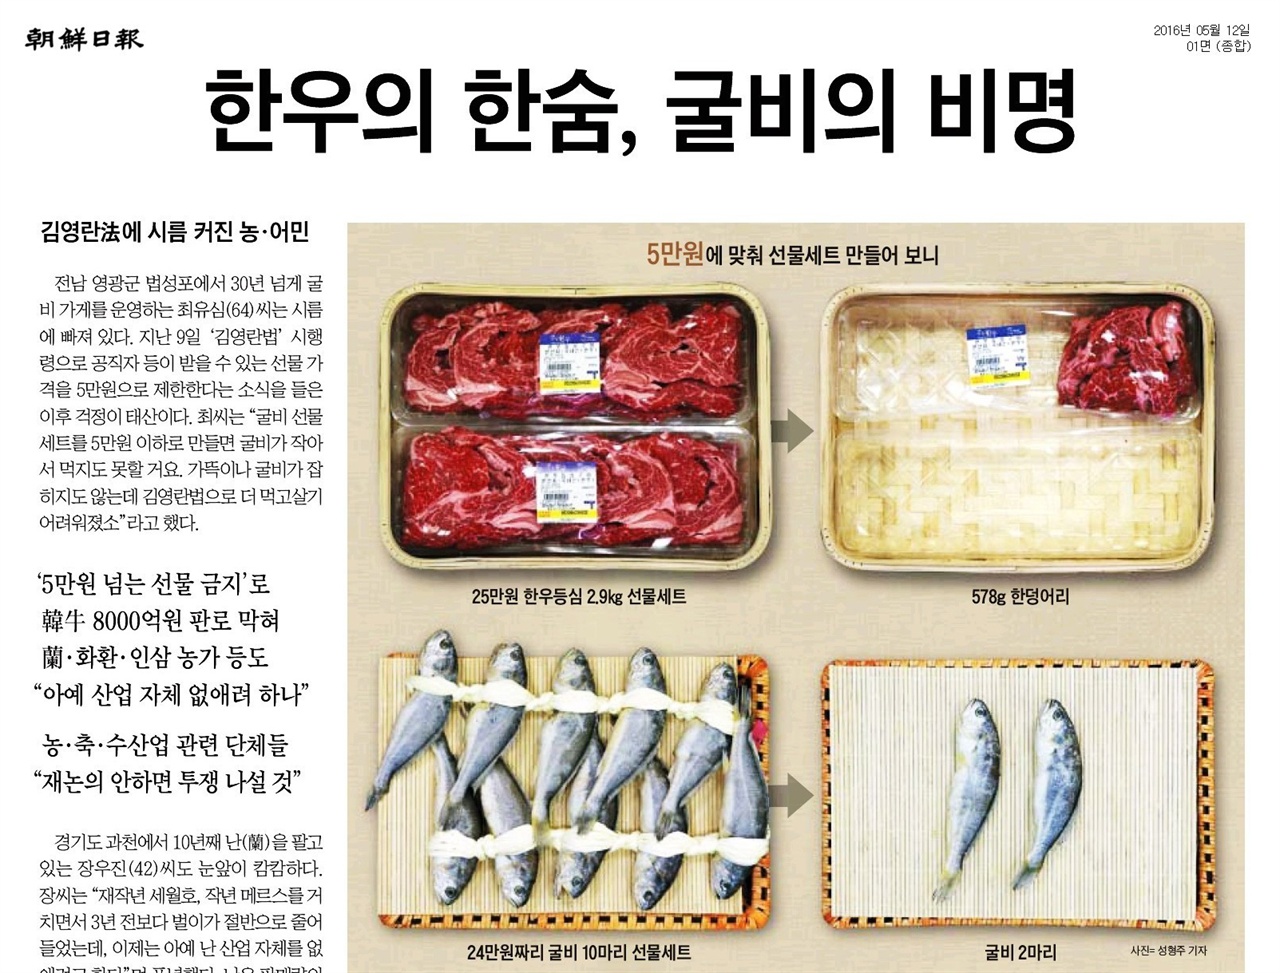 김영란법으로 농업과 축산업이 위기에 몰린다는 <조선일보> 보도. 